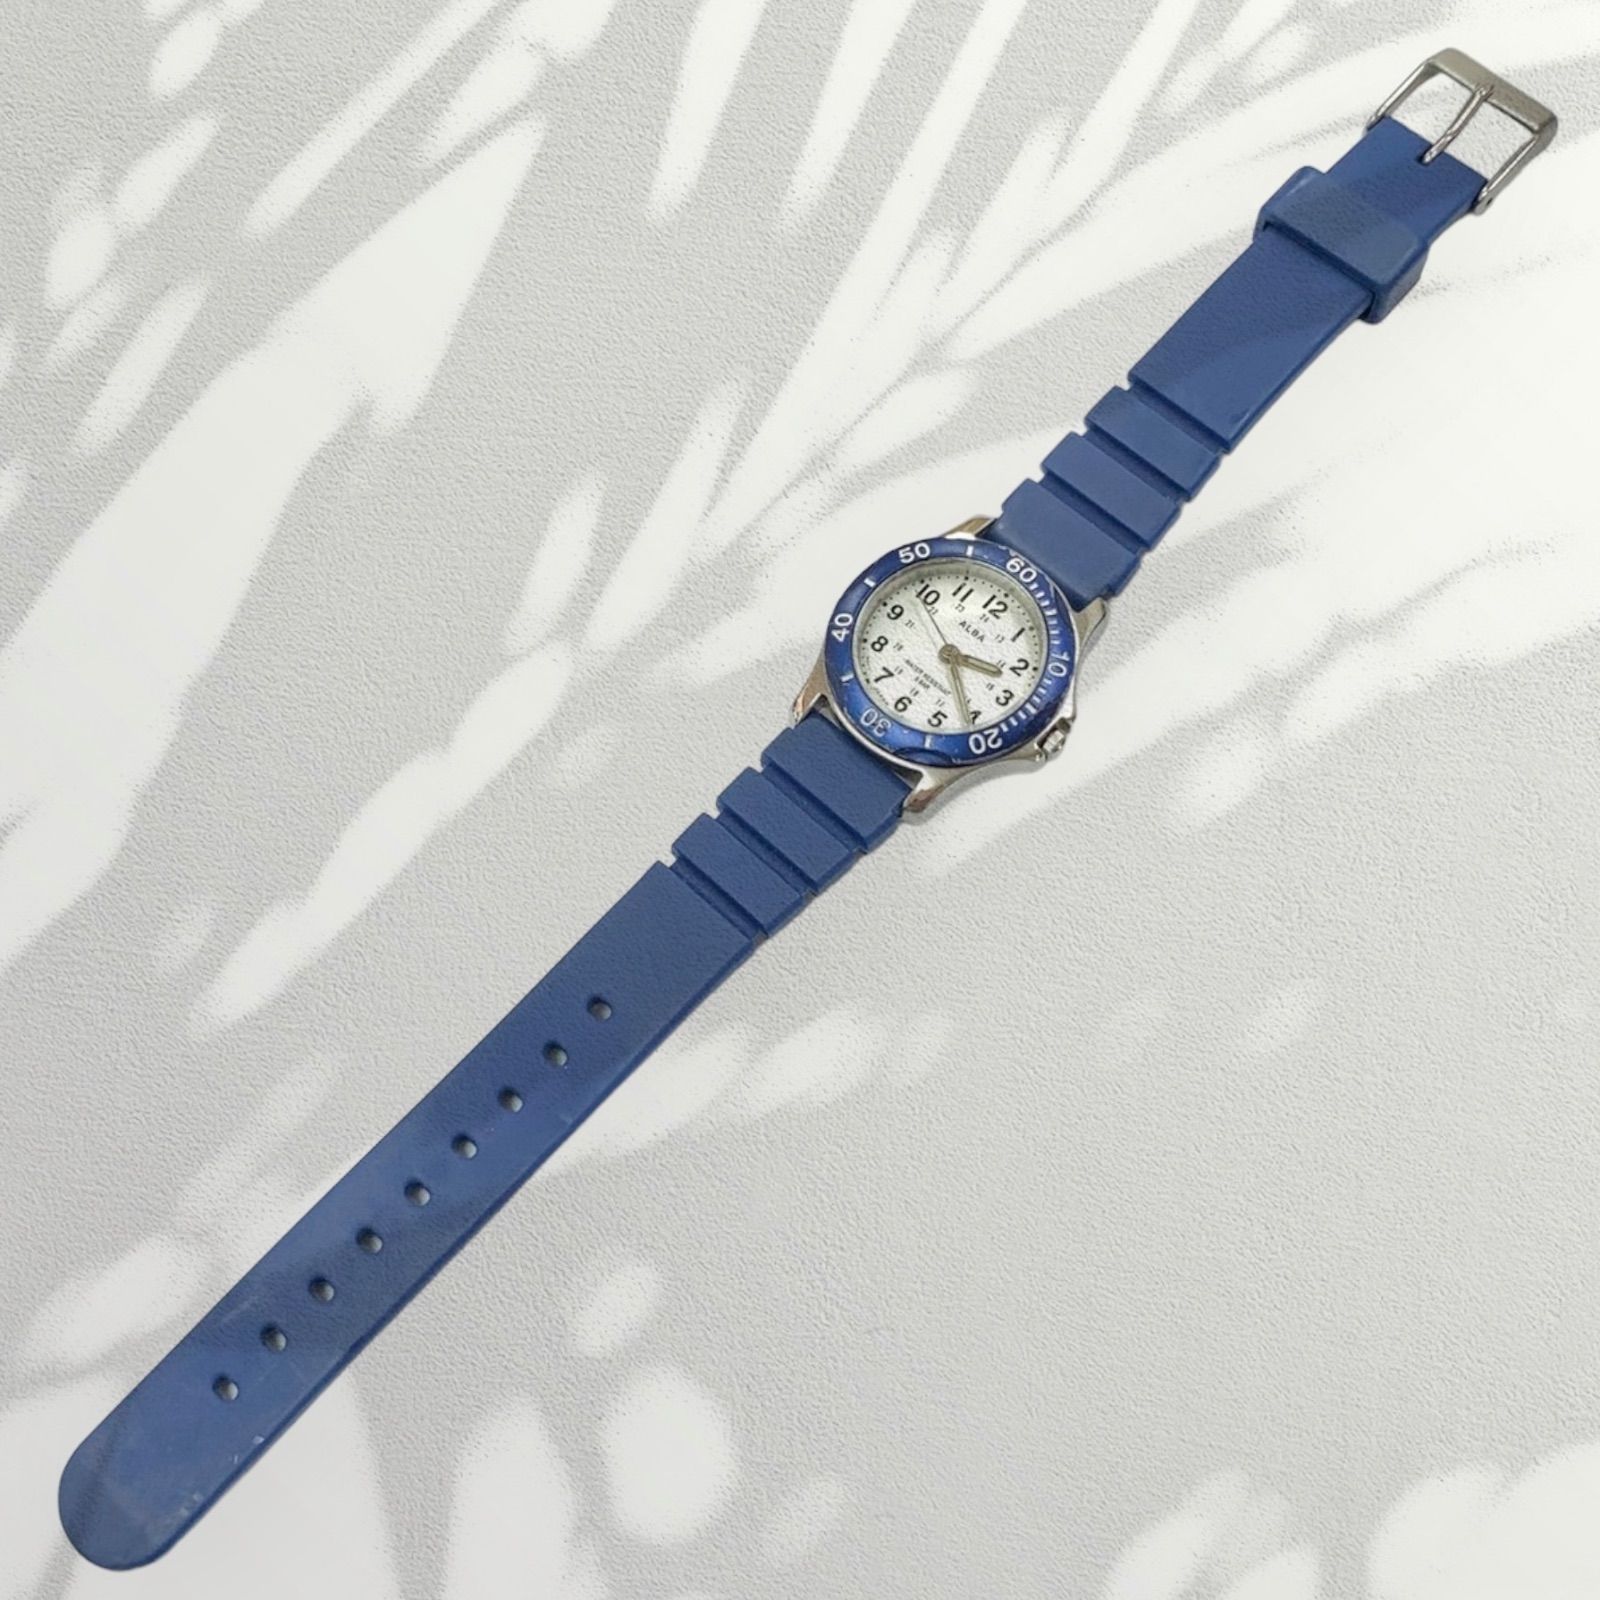 【SEIKO ALBA ️セイコーアルバ】 24.05.18新品電池交換済稼働 ホワイト×ブルーカラー ダイバーズウォッチタイプ V501-1C10 アナログレディース腕時計 (AYA)